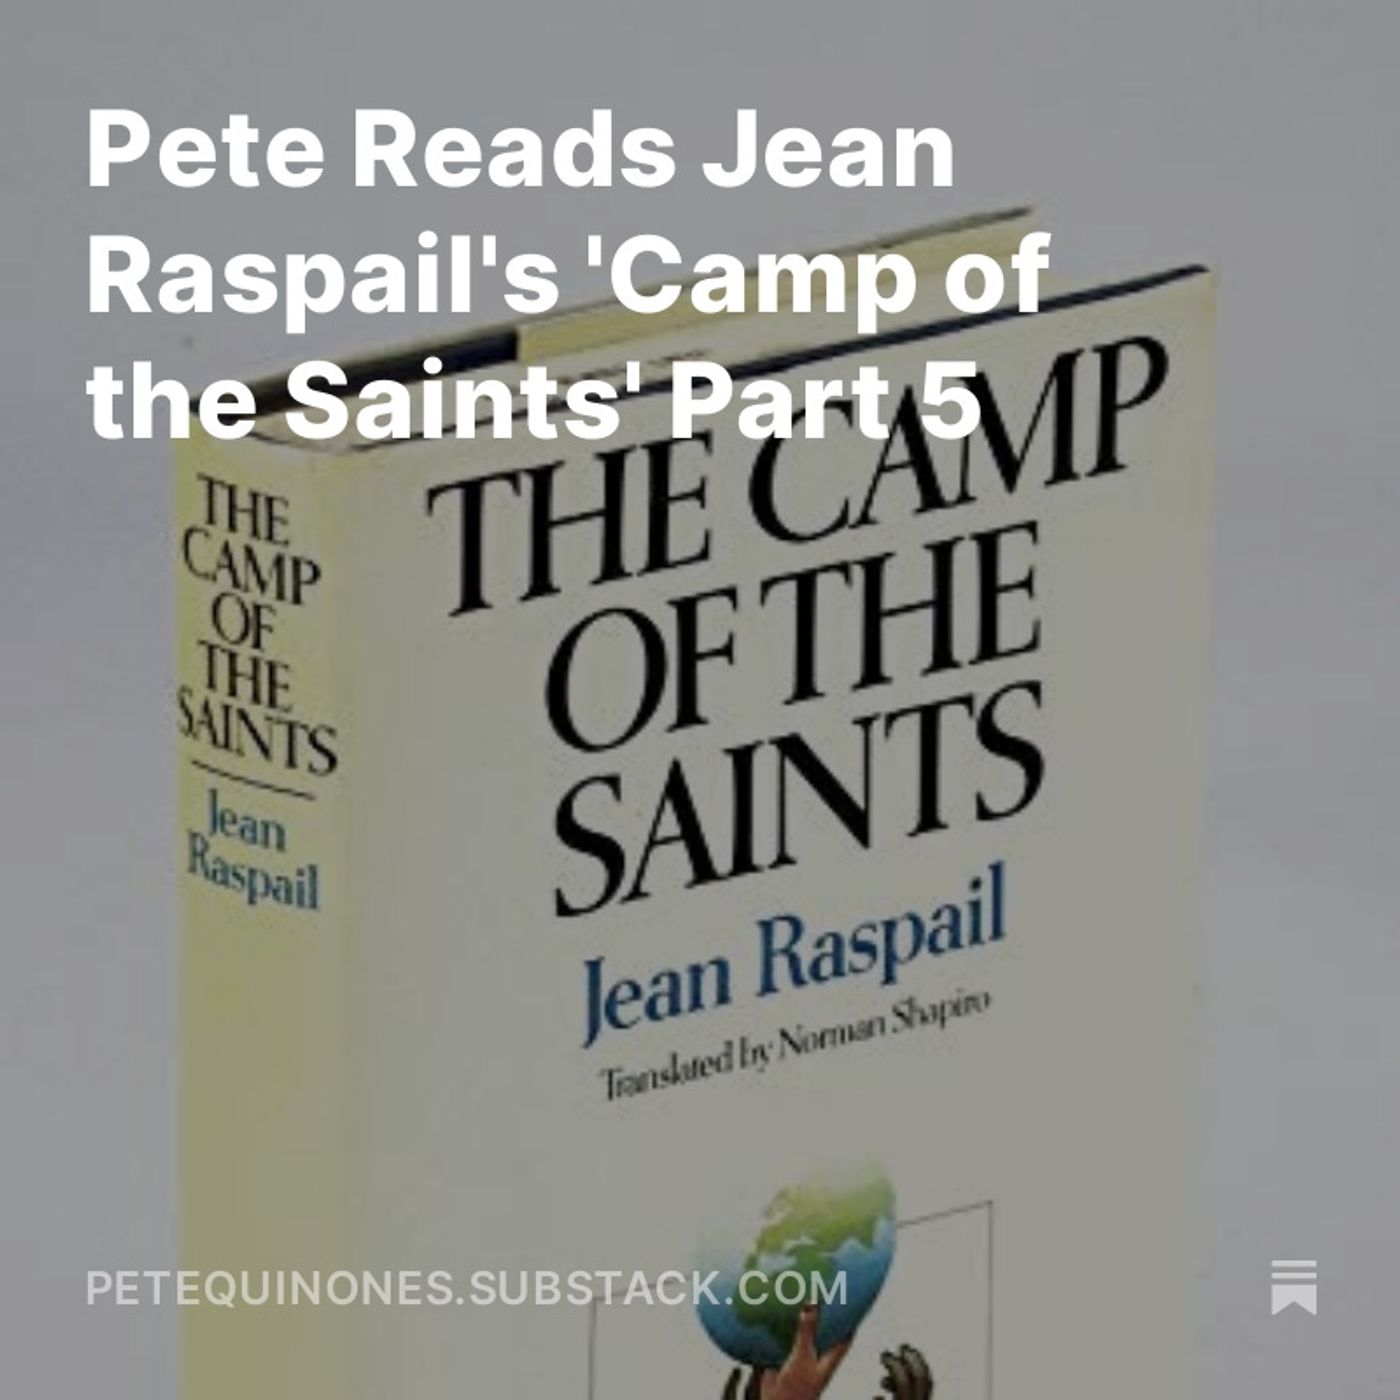 Pete Reads Jean Raspail's 'Camp of the Saints' Part 5